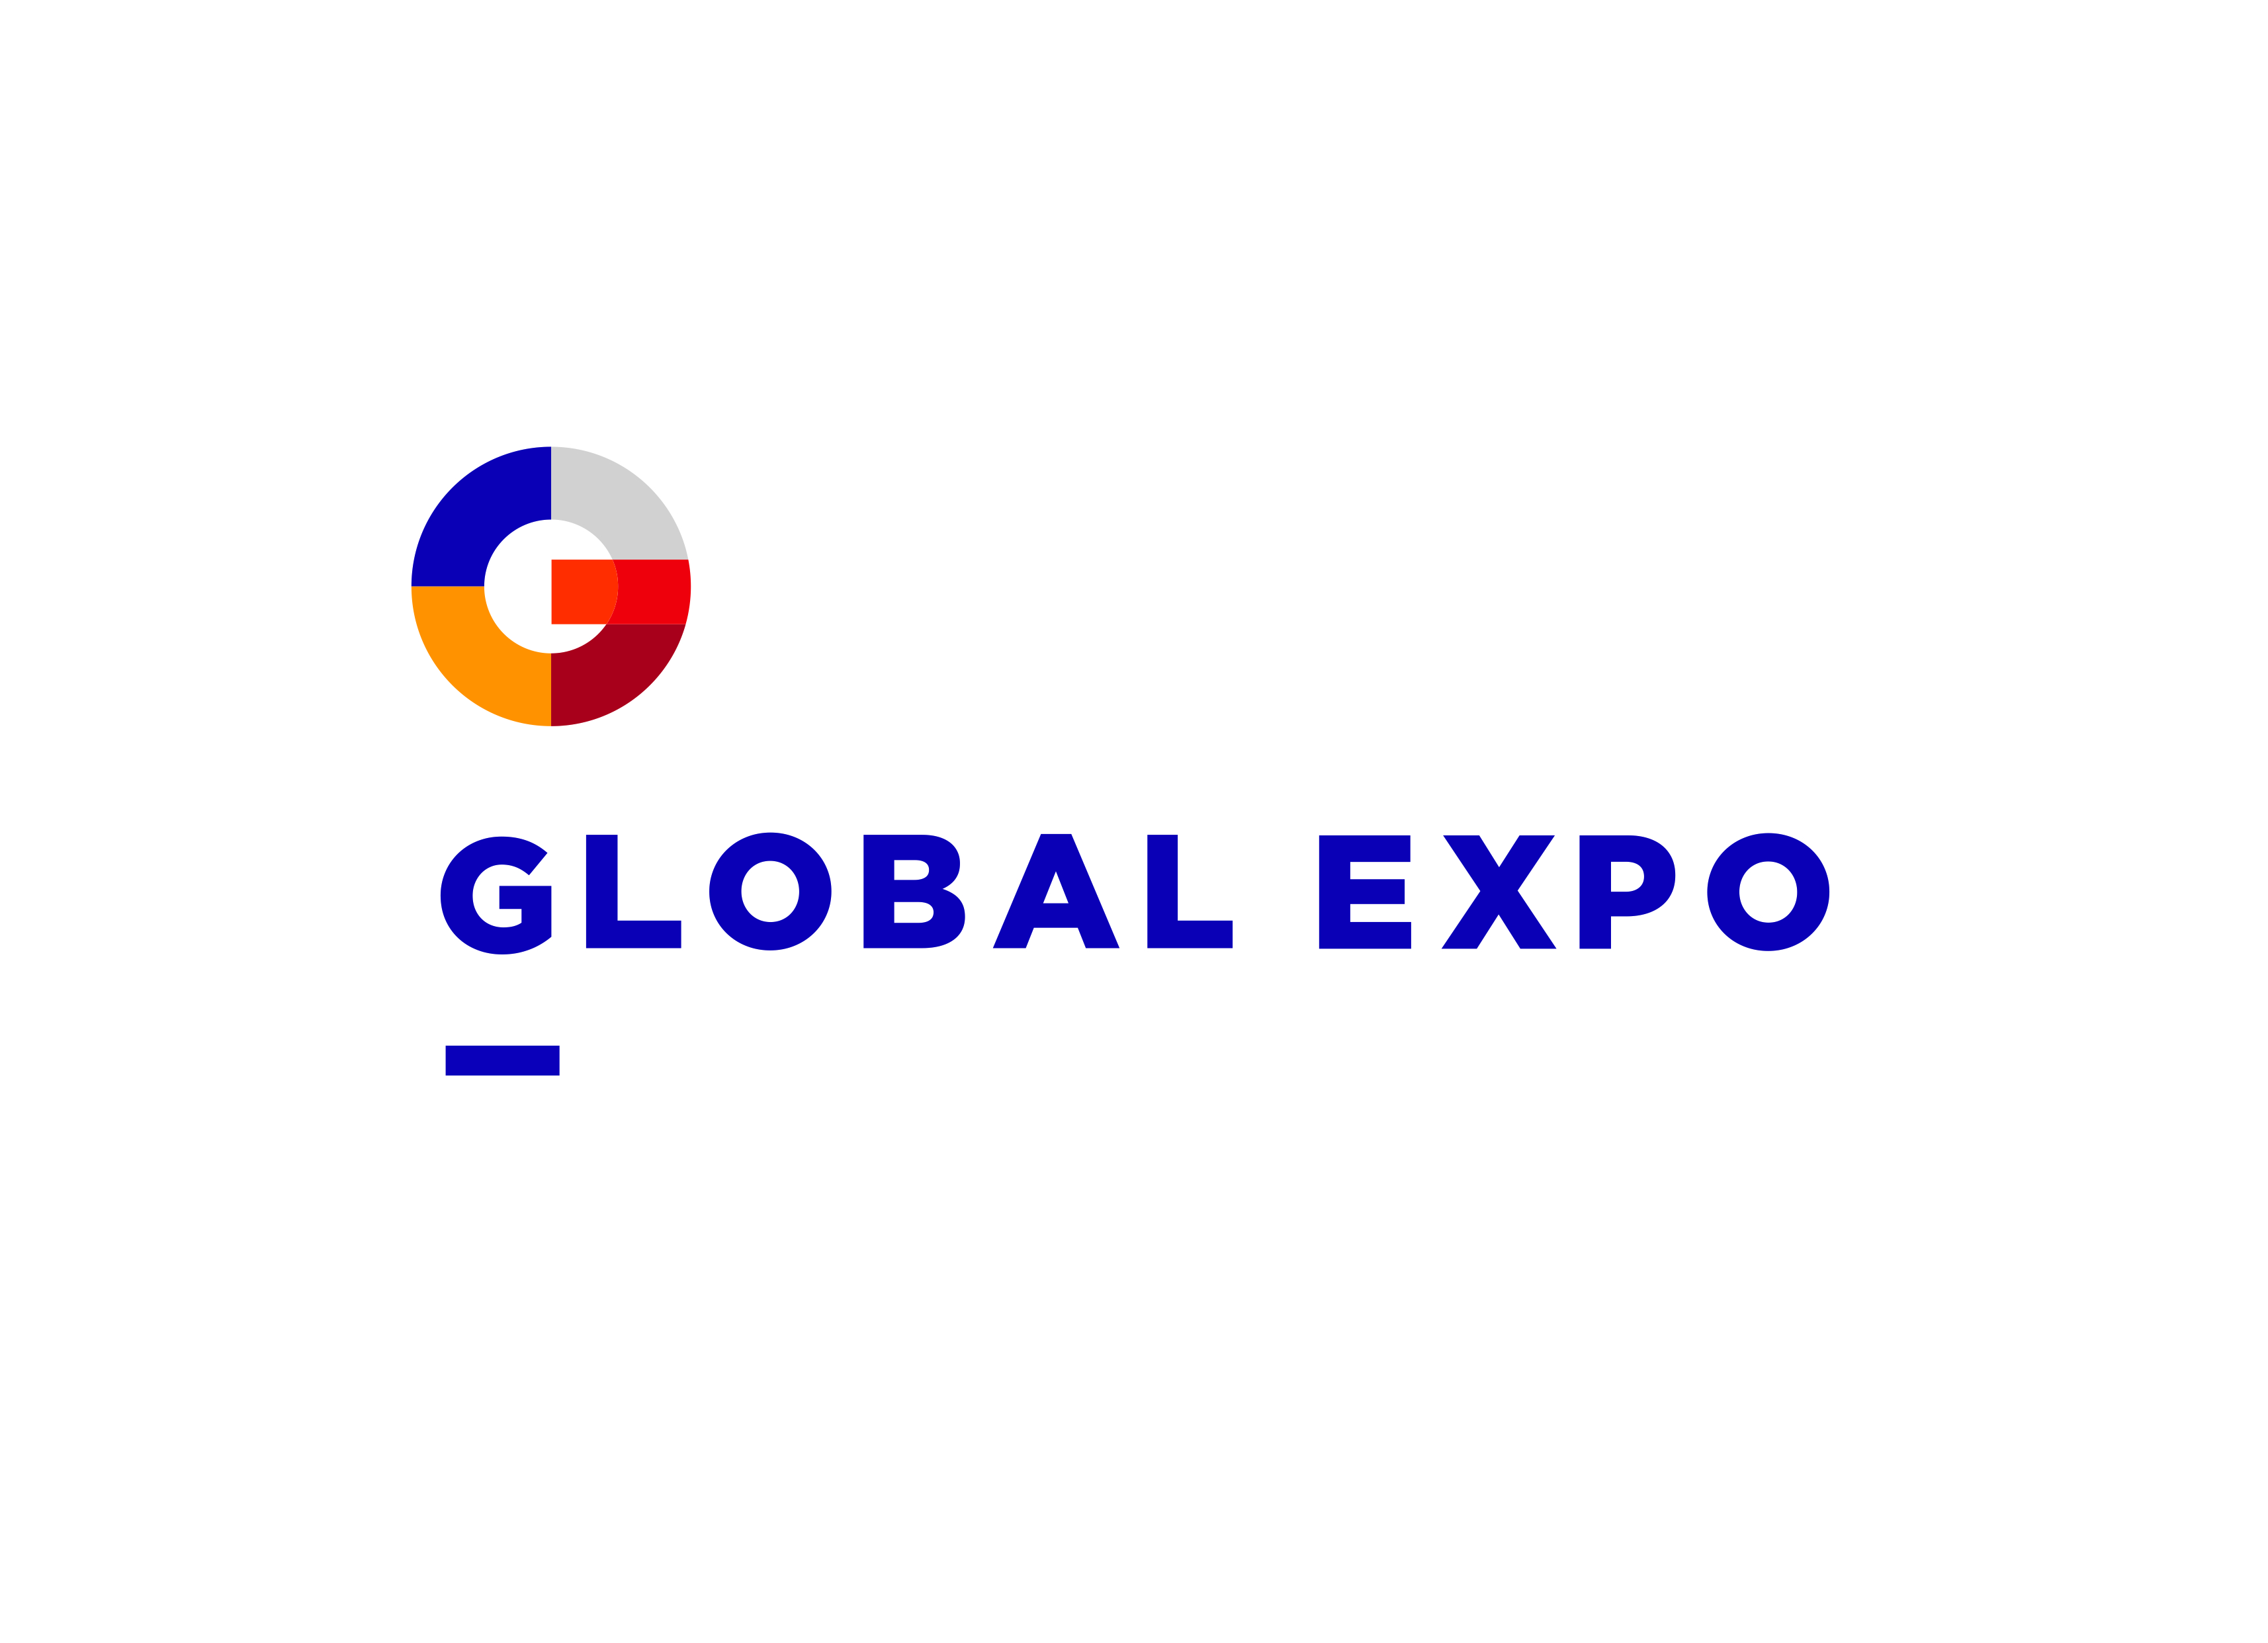 Global Expo logo